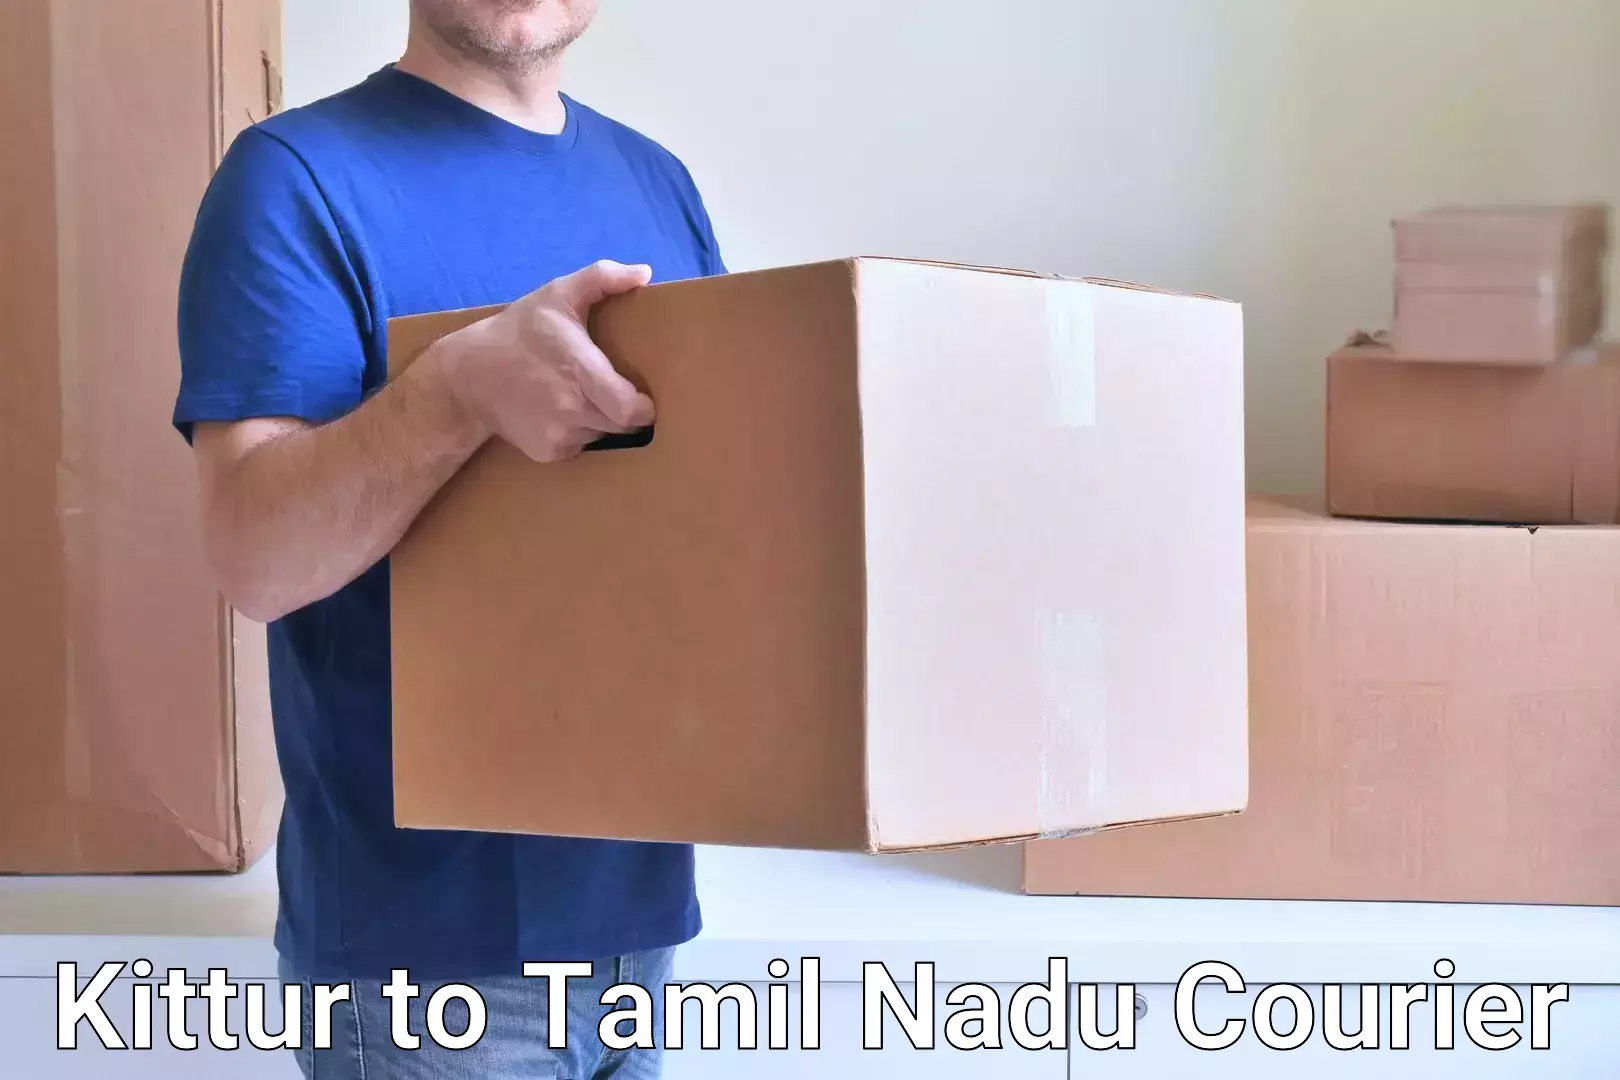 Efficient order fulfillment in Kittur to Tamil Nadu